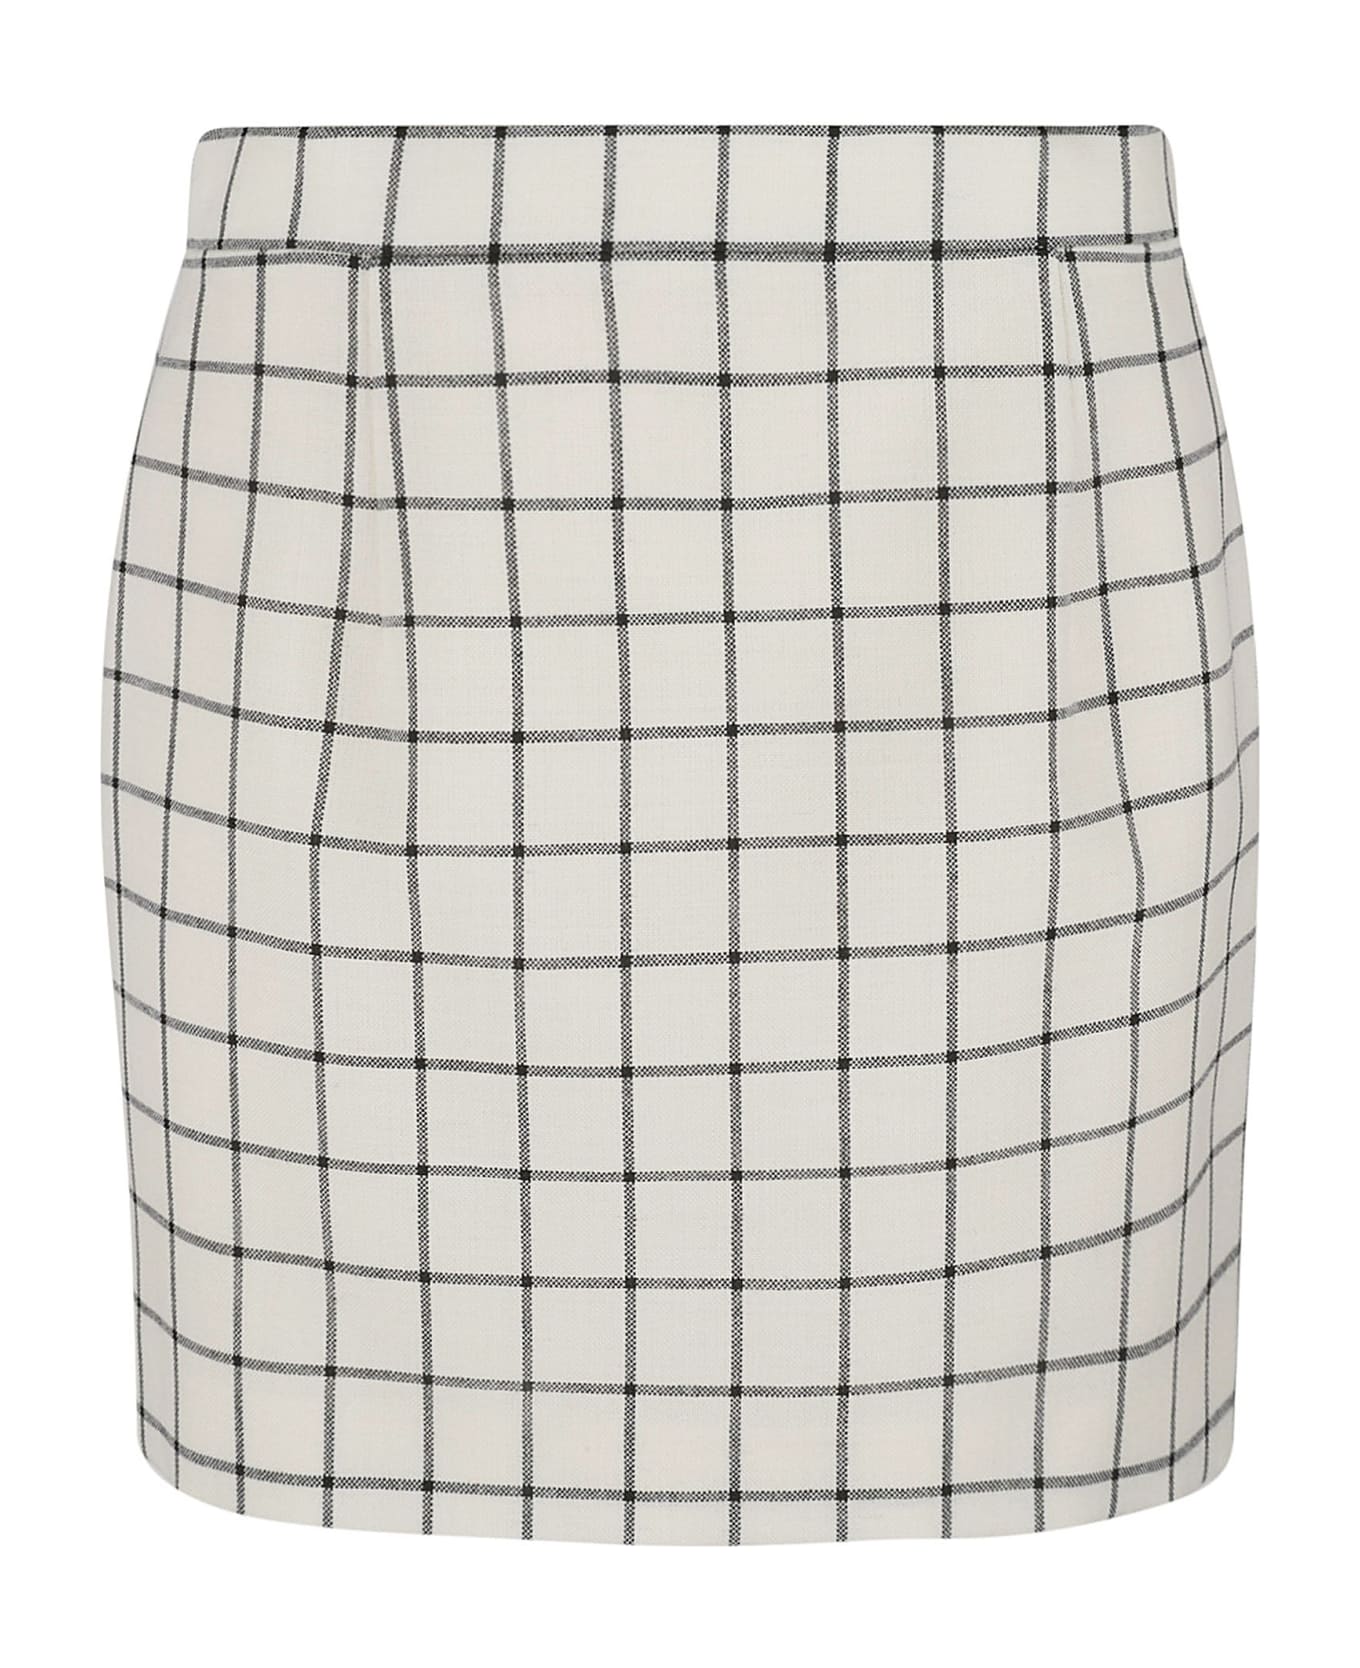 Marni Check Print Skirt - Stone White スカート